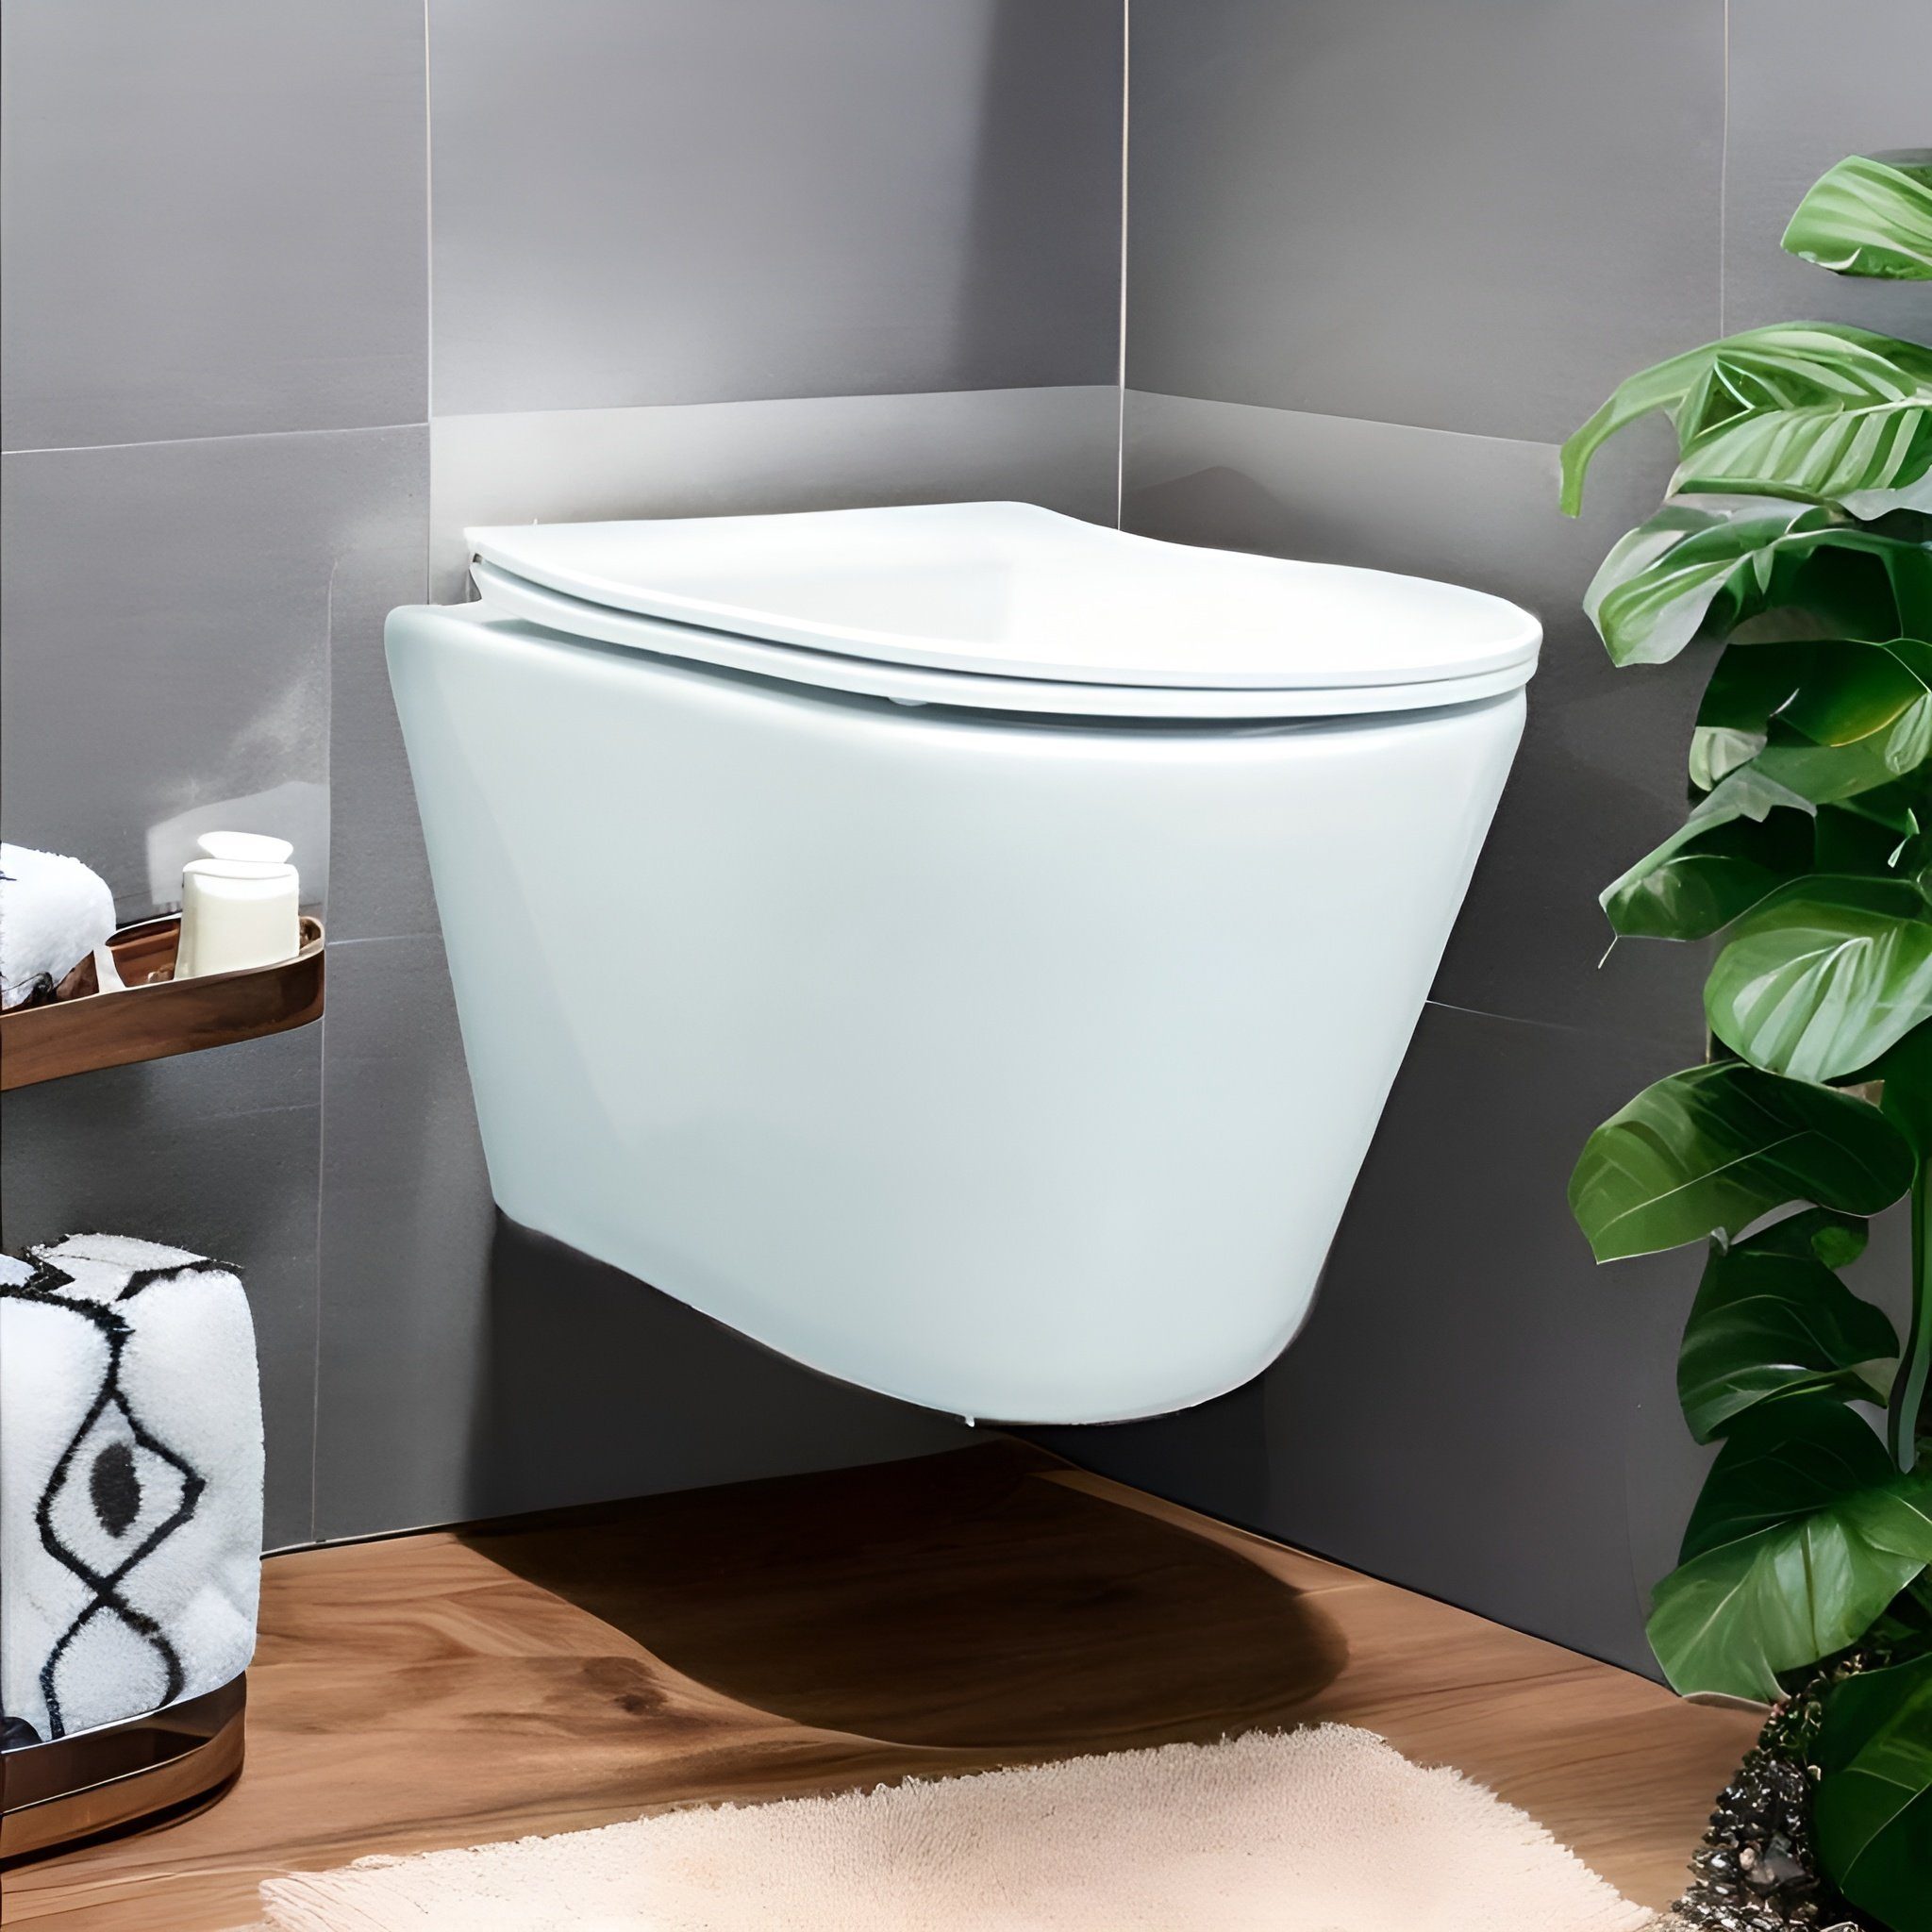 KOLMAN Tiefspül-WC Spülrandlos Wand-WC Milos, Weiß, mit Slim Soft-close WC- Sitz und Schallschutzmatte